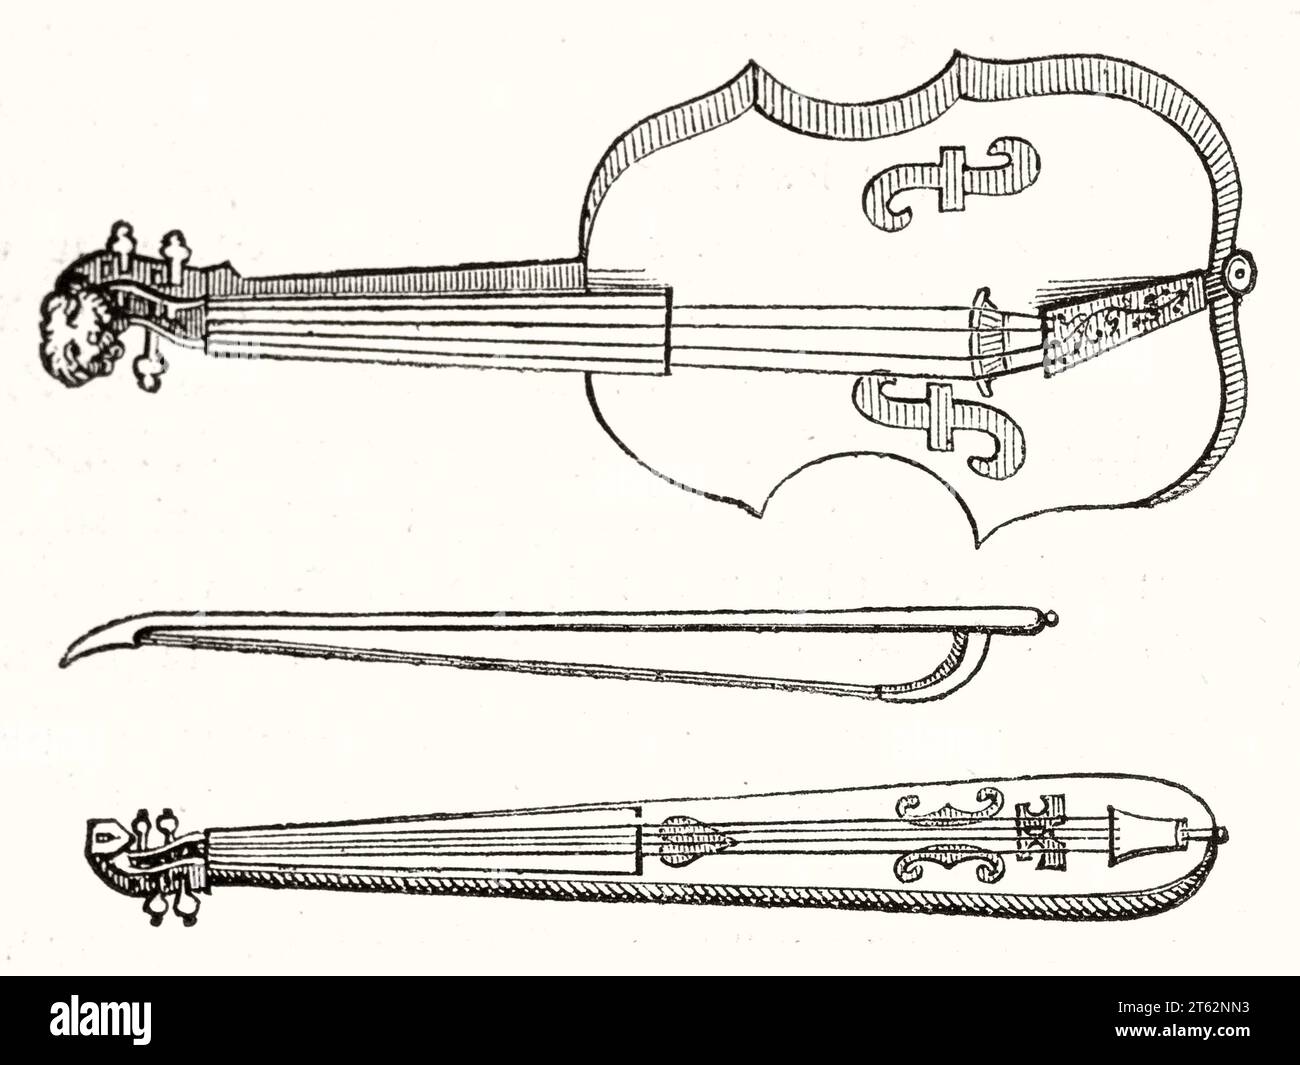 Illustration ancienne de violon, archet et kit. Après gravure du 17e siècle, publ. Sur magasin pittoresque, Paris, 1849 Banque D'Images